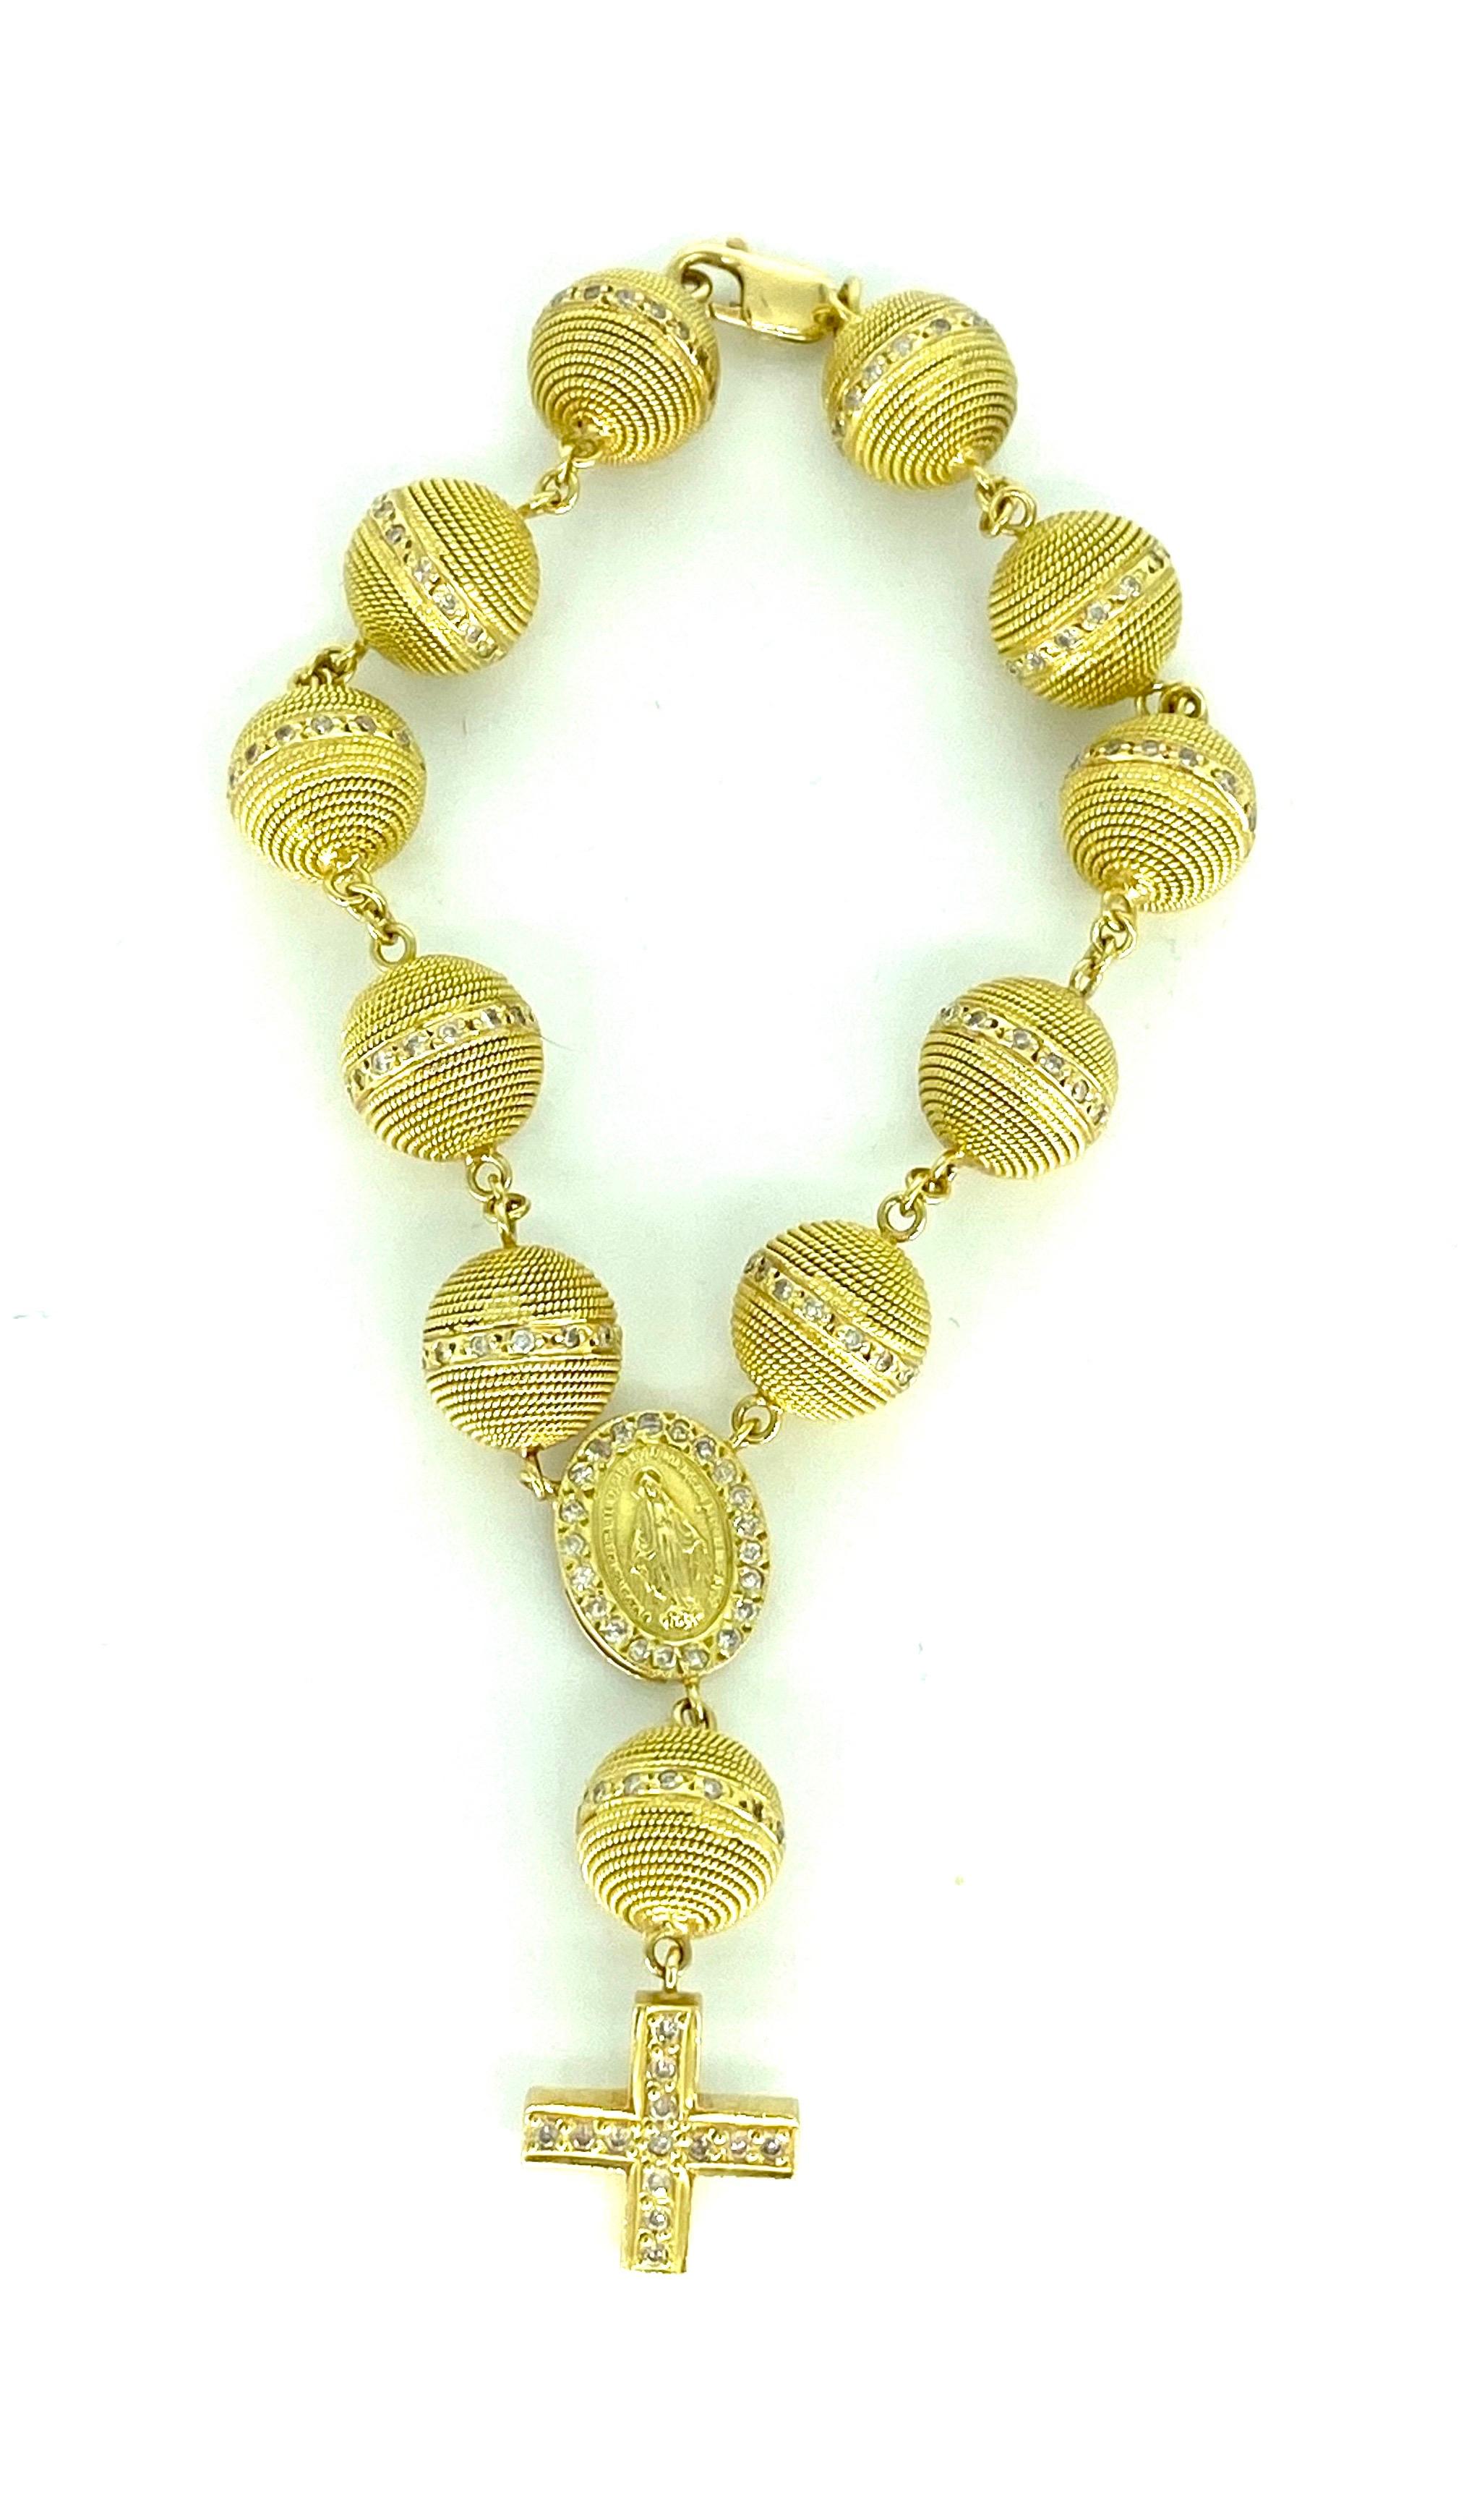 Vintage 3.50 Carat Diamond 11mm Rope Beads Rosary 18k Gold Bracelet. UNIQUE EN SON GENRE
Le bracelet est d'une longueur de 7 pouces et chaque perle mesure 11 mm. Ce bracelet est en or massif 18 carats et pèse 40,6 grammes. 